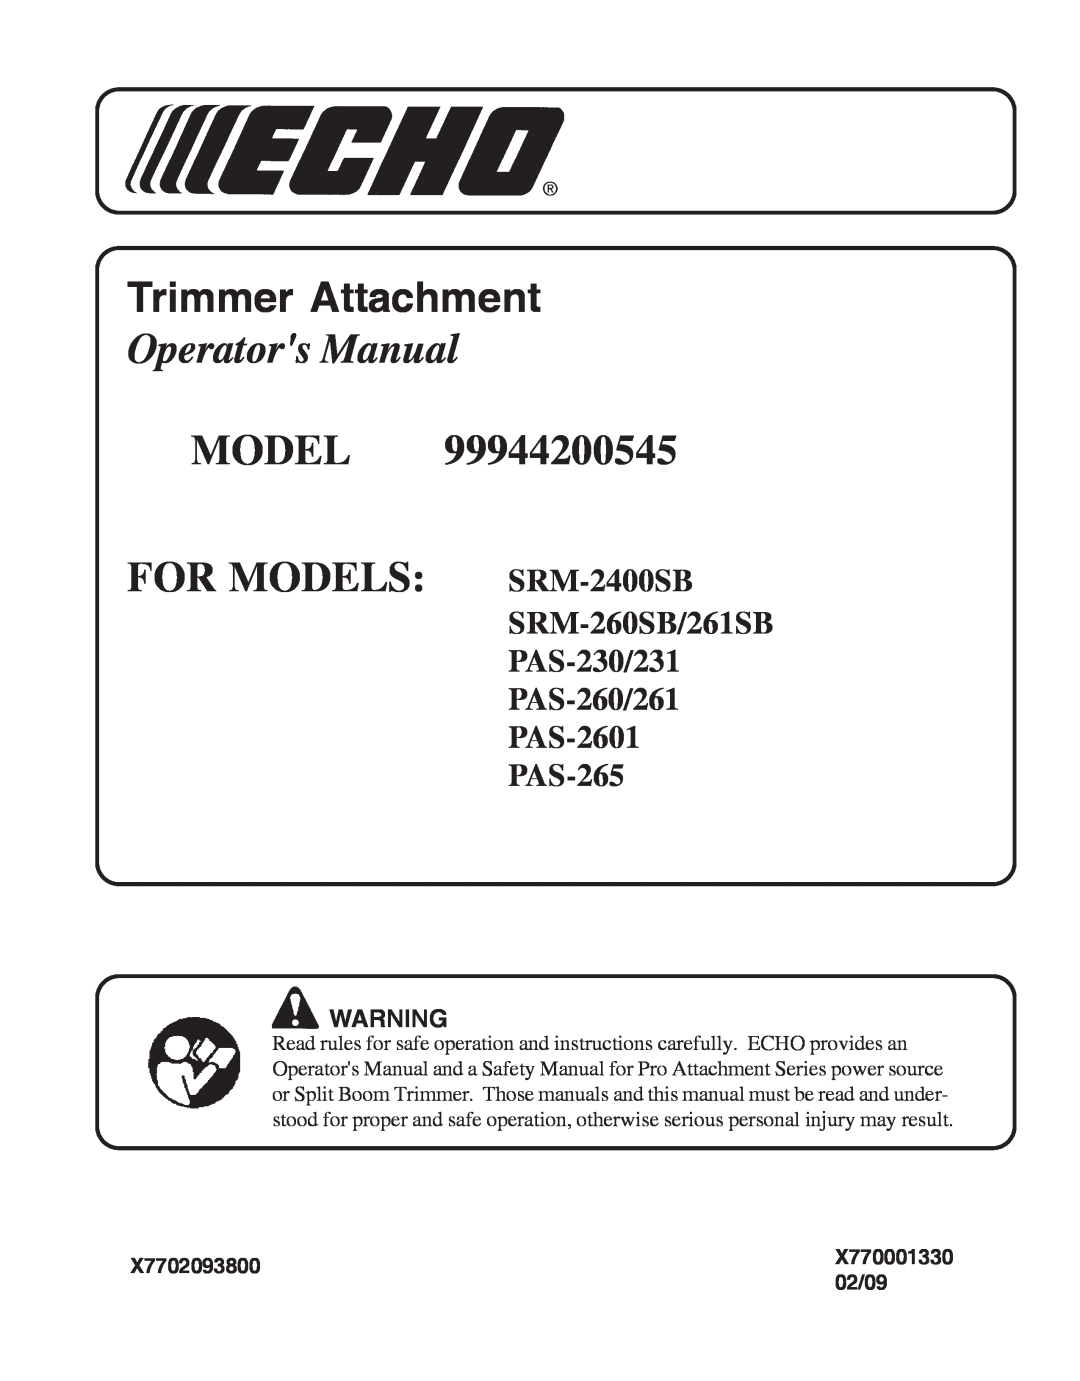 Echo 99944200545, PAS-230 manual X7702093800, 02/09, Trimmer Attachment, Operators Manual, MODEL FOR MODELS SRM-2400SB 